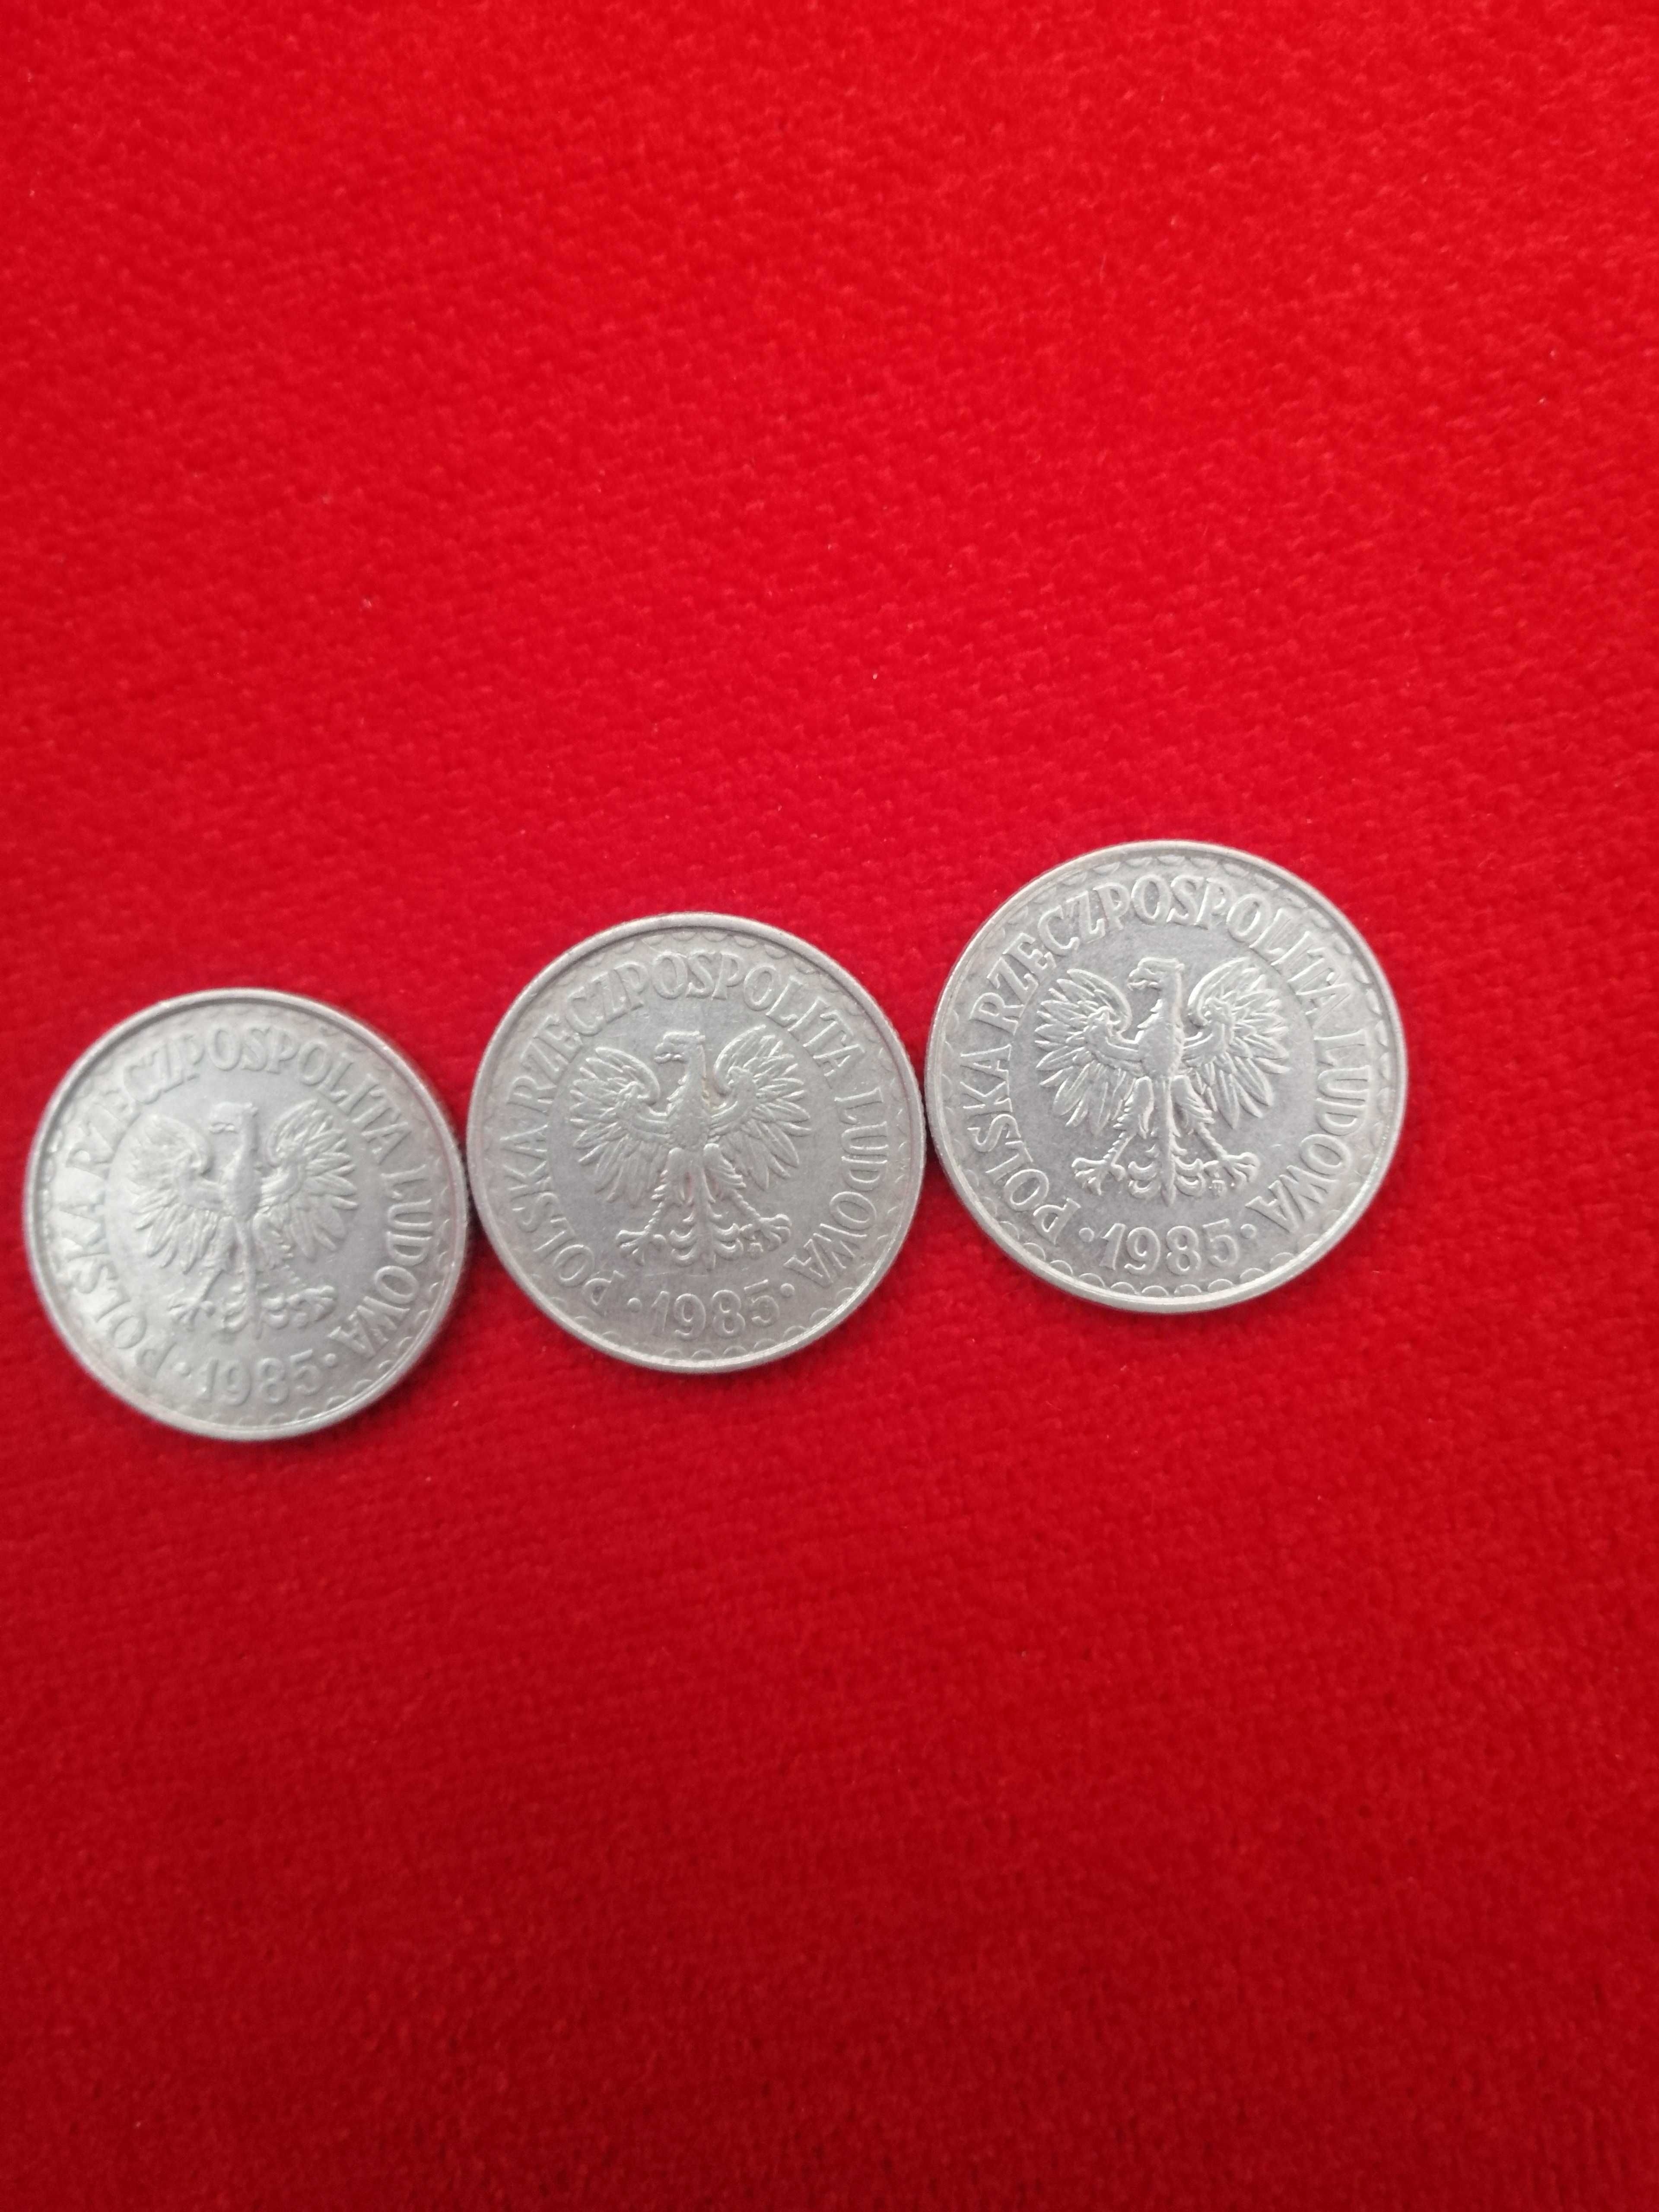 Monety PRL 3 złotówki z 1985 roku